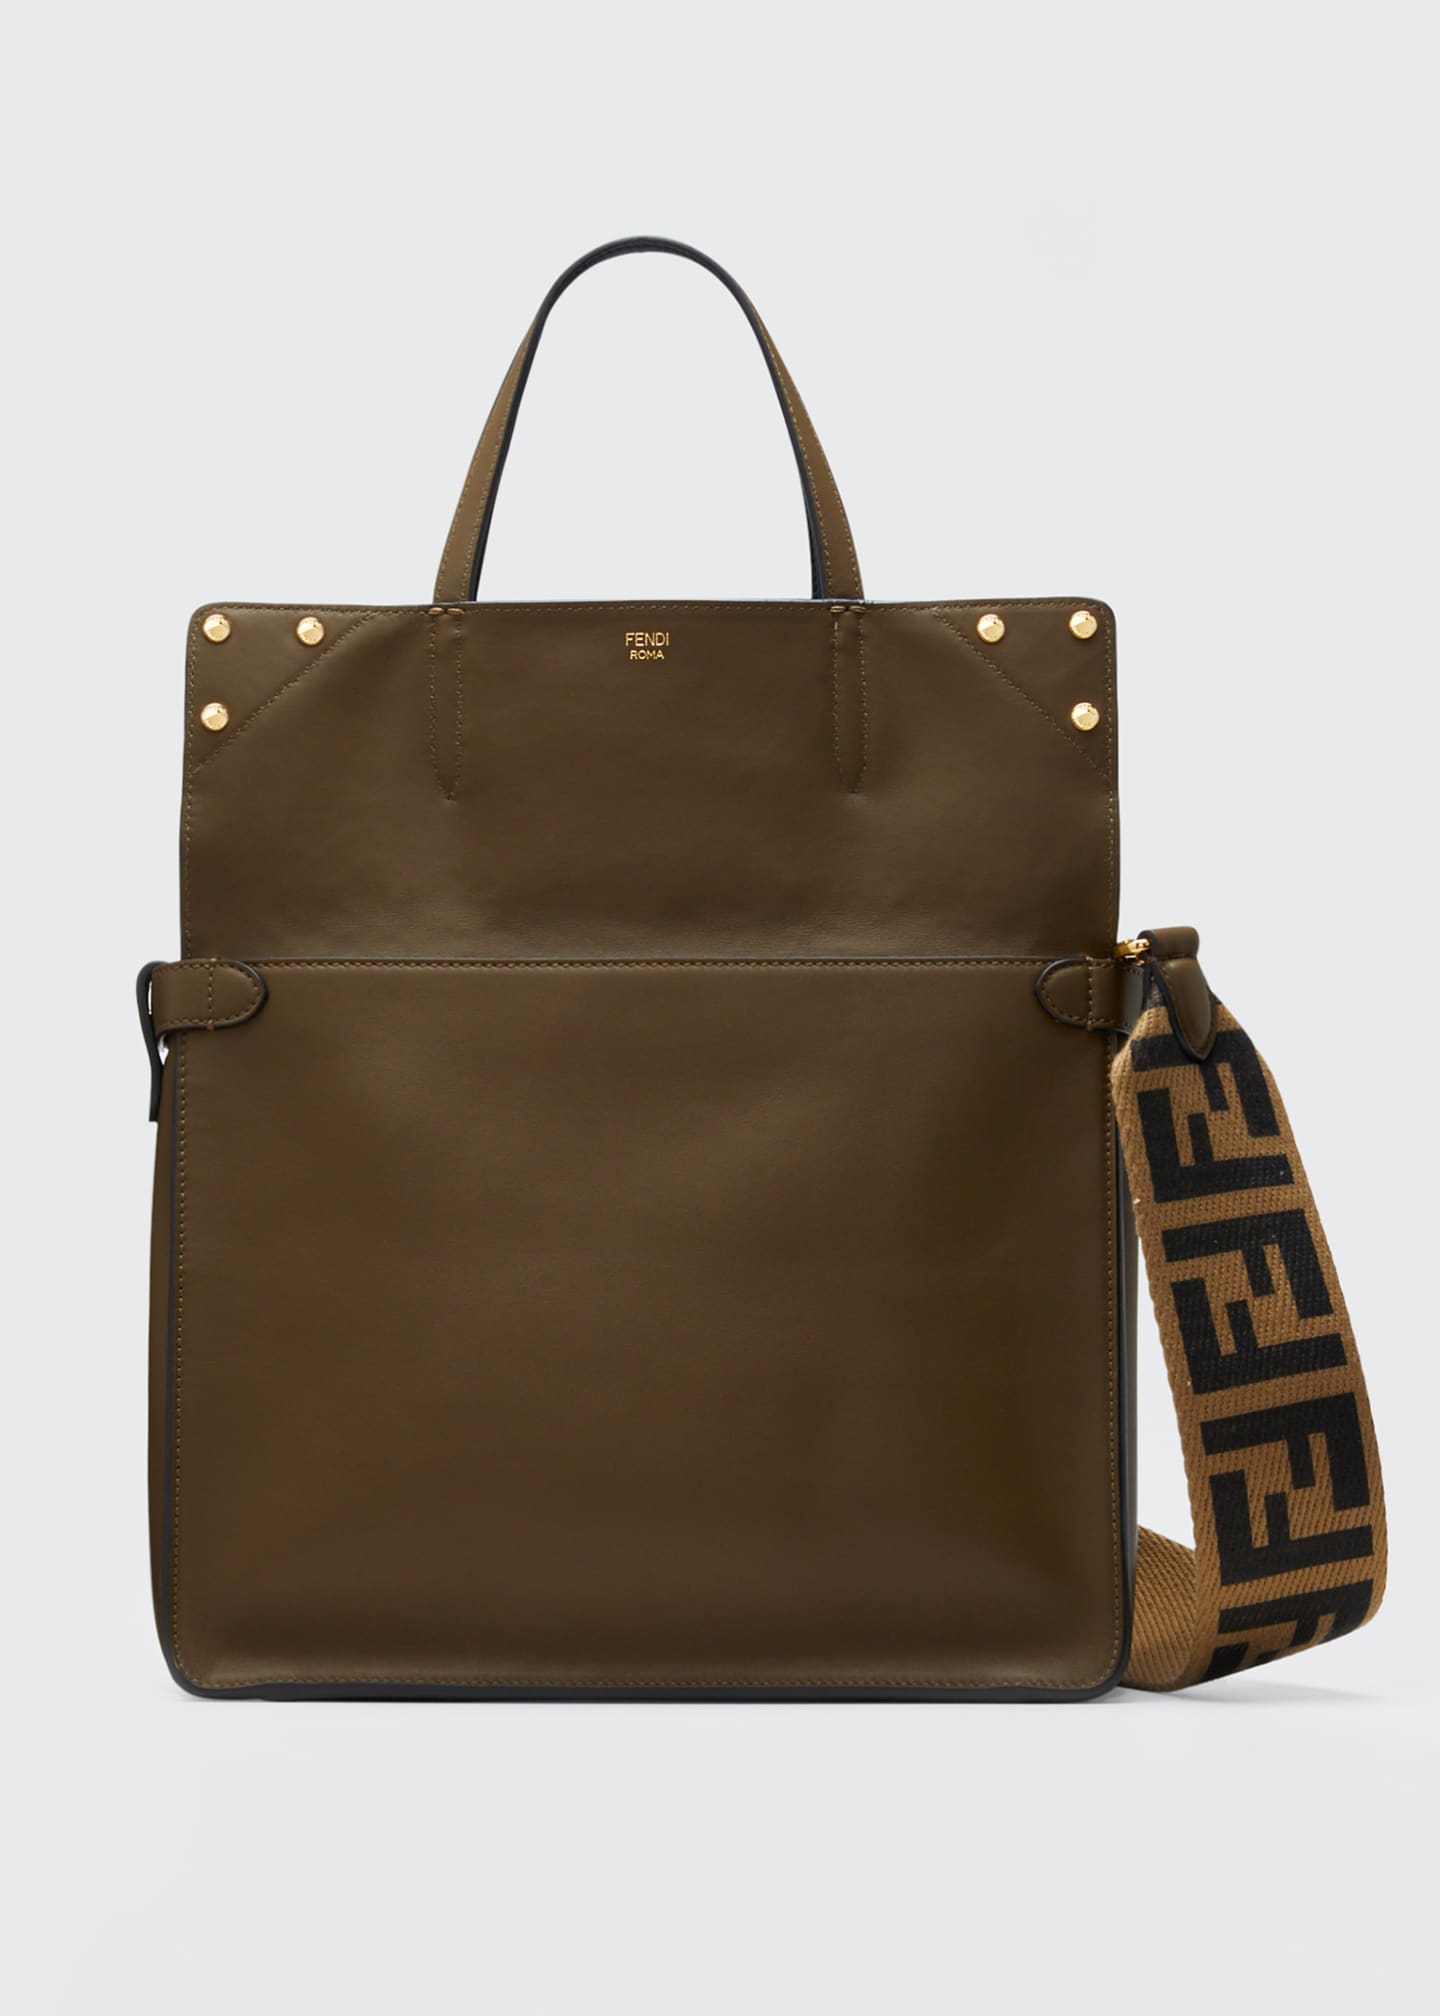 Fendi Flip Regular Grace Leather Tote Bag - Bergdorf Goodman